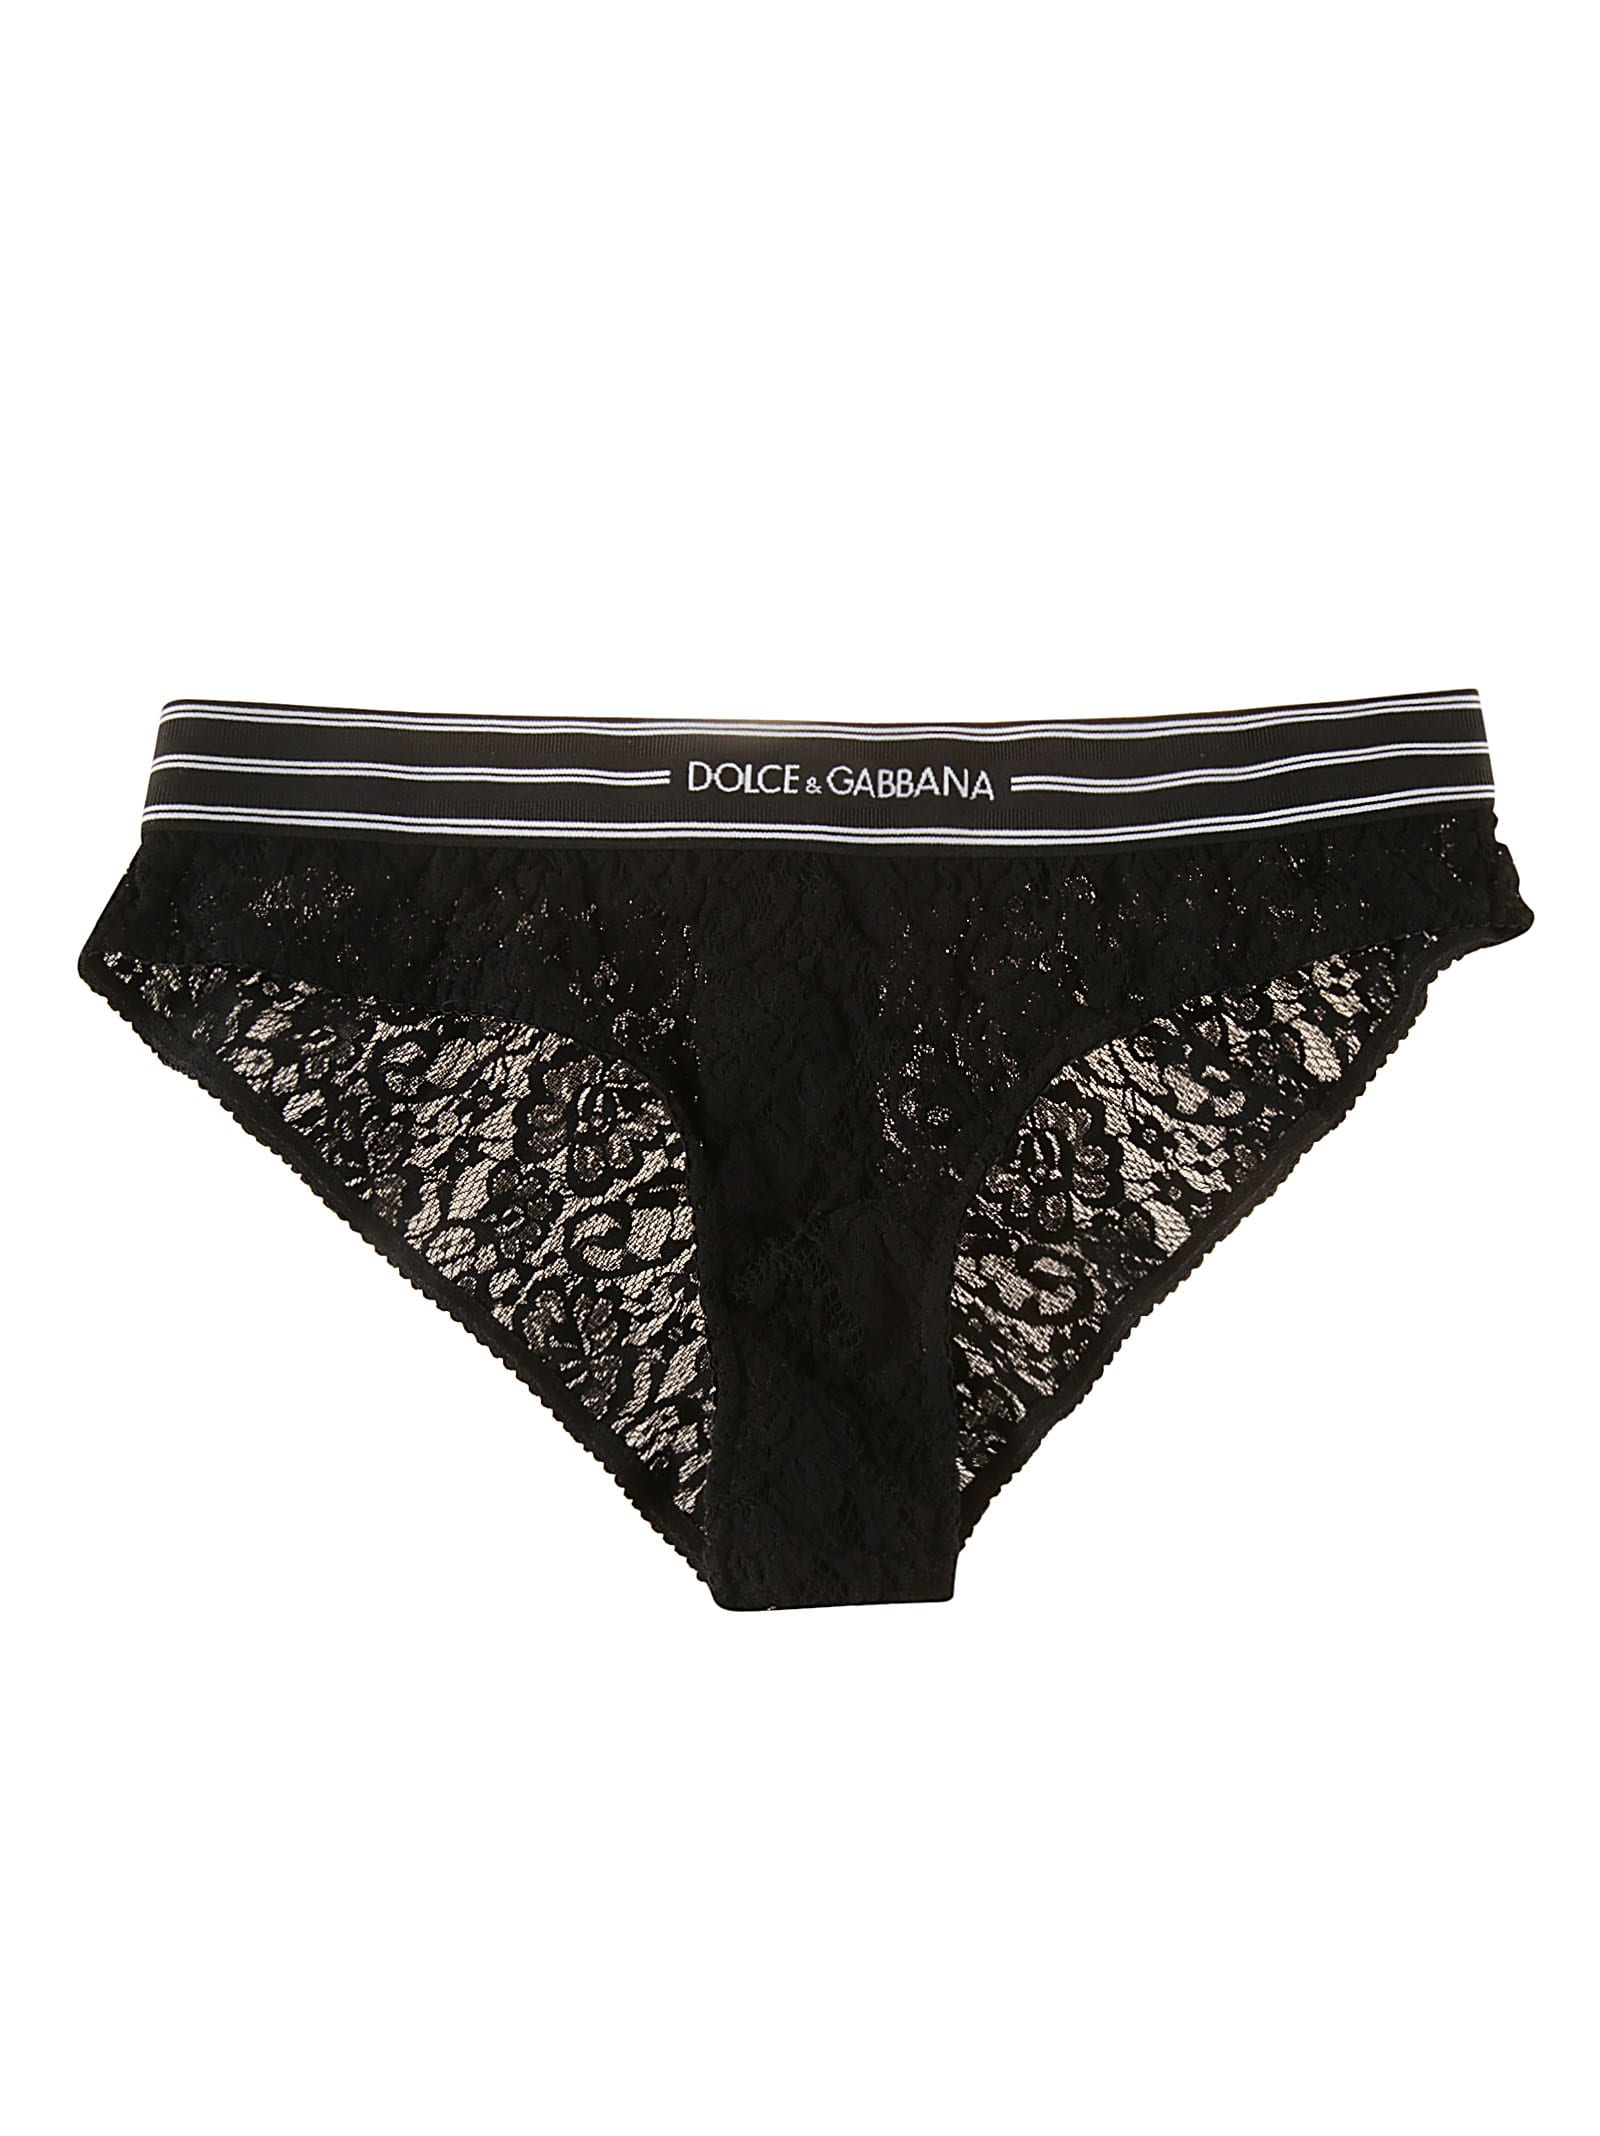 Dolce & Gabbana Ribbed Logo Waist Lace Bottom Underwear